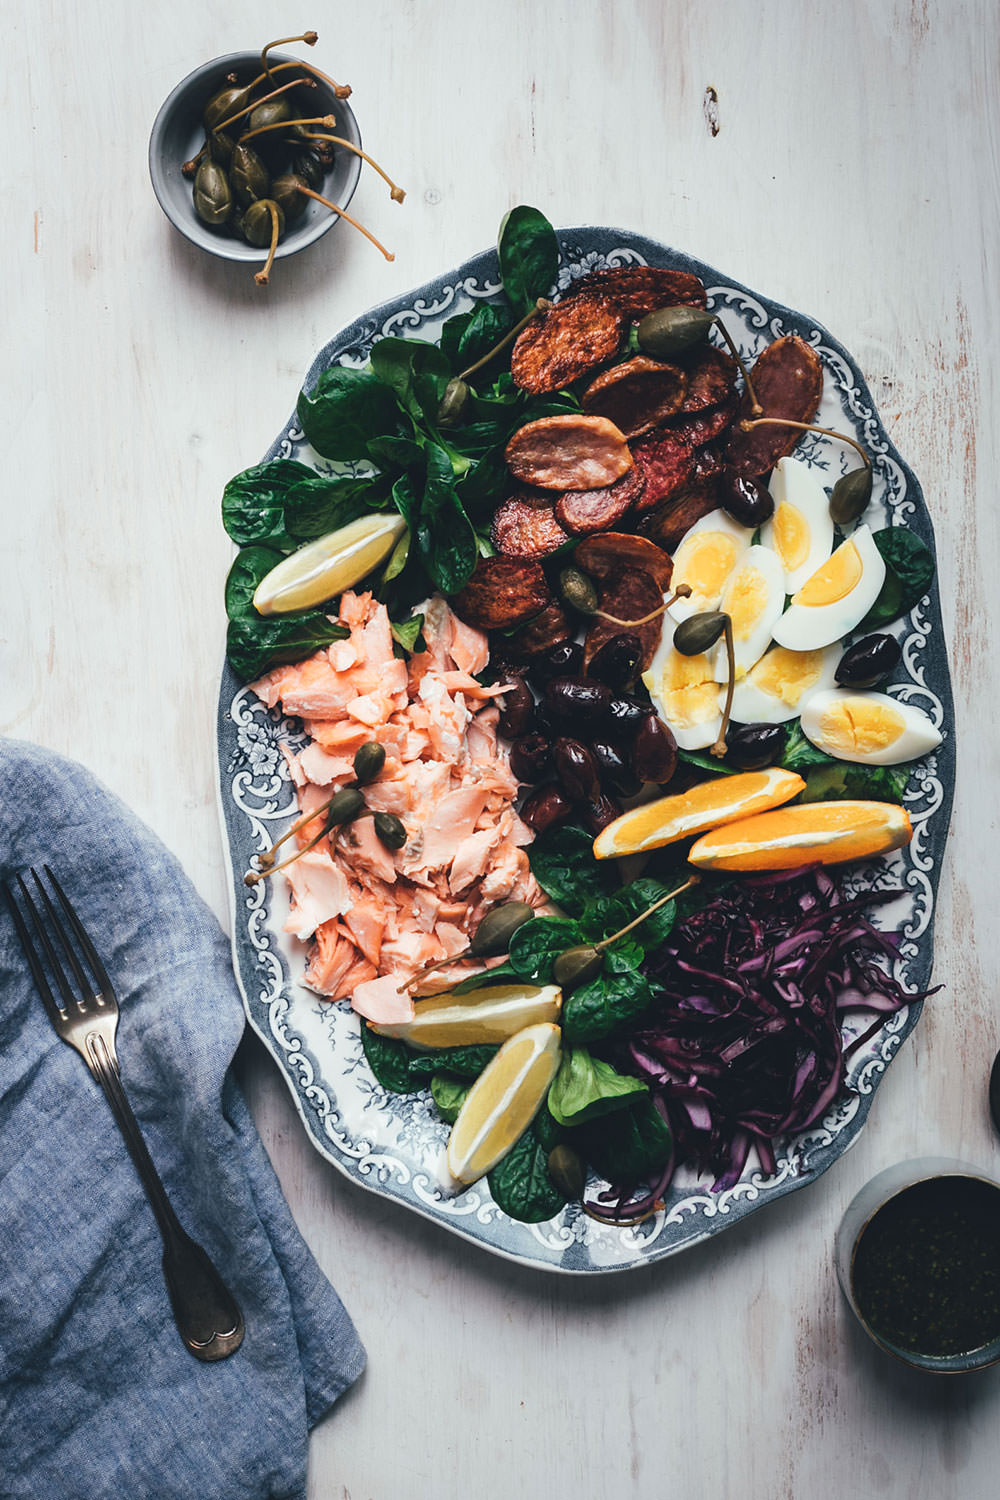 Rezept für winterlichen Salade niçoise (Nizza Salat) mit Pulled Lachs (Werbung) | festliche Salatplatte mit Feldsalat, Rotkohl und vielem mehr | moeyskitchen.com #salat #salatrezept #rezepte #lachs #lachsfilet #foodblogger #nizzasalat #saladenicoise